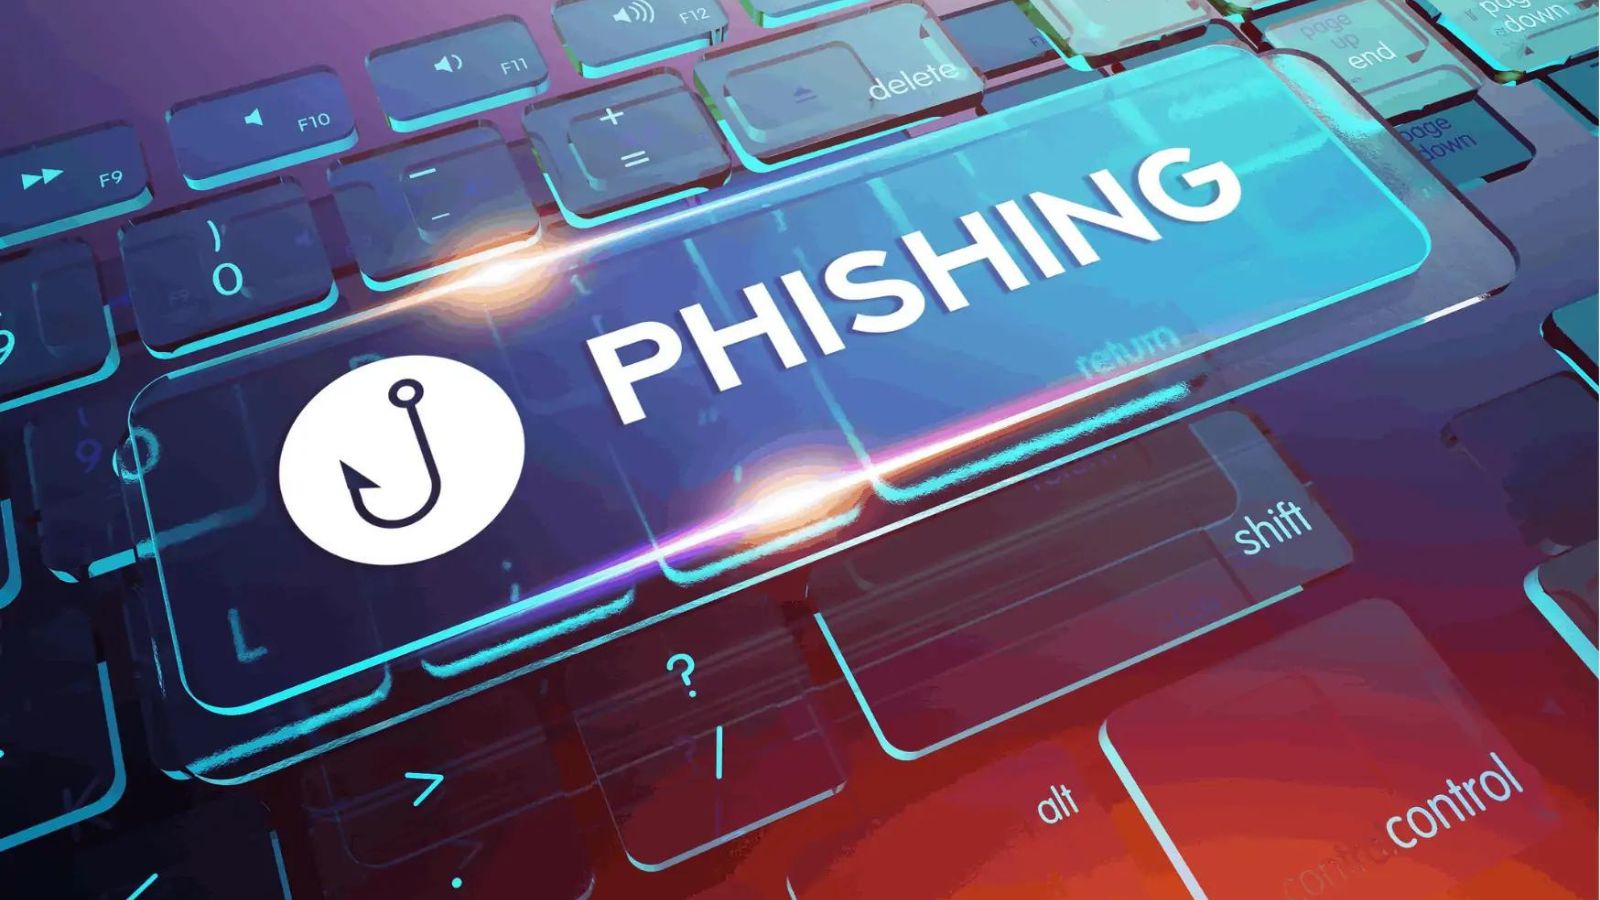 Attenti alla TRUFFA phishing, come funziona e che rischi ci sono